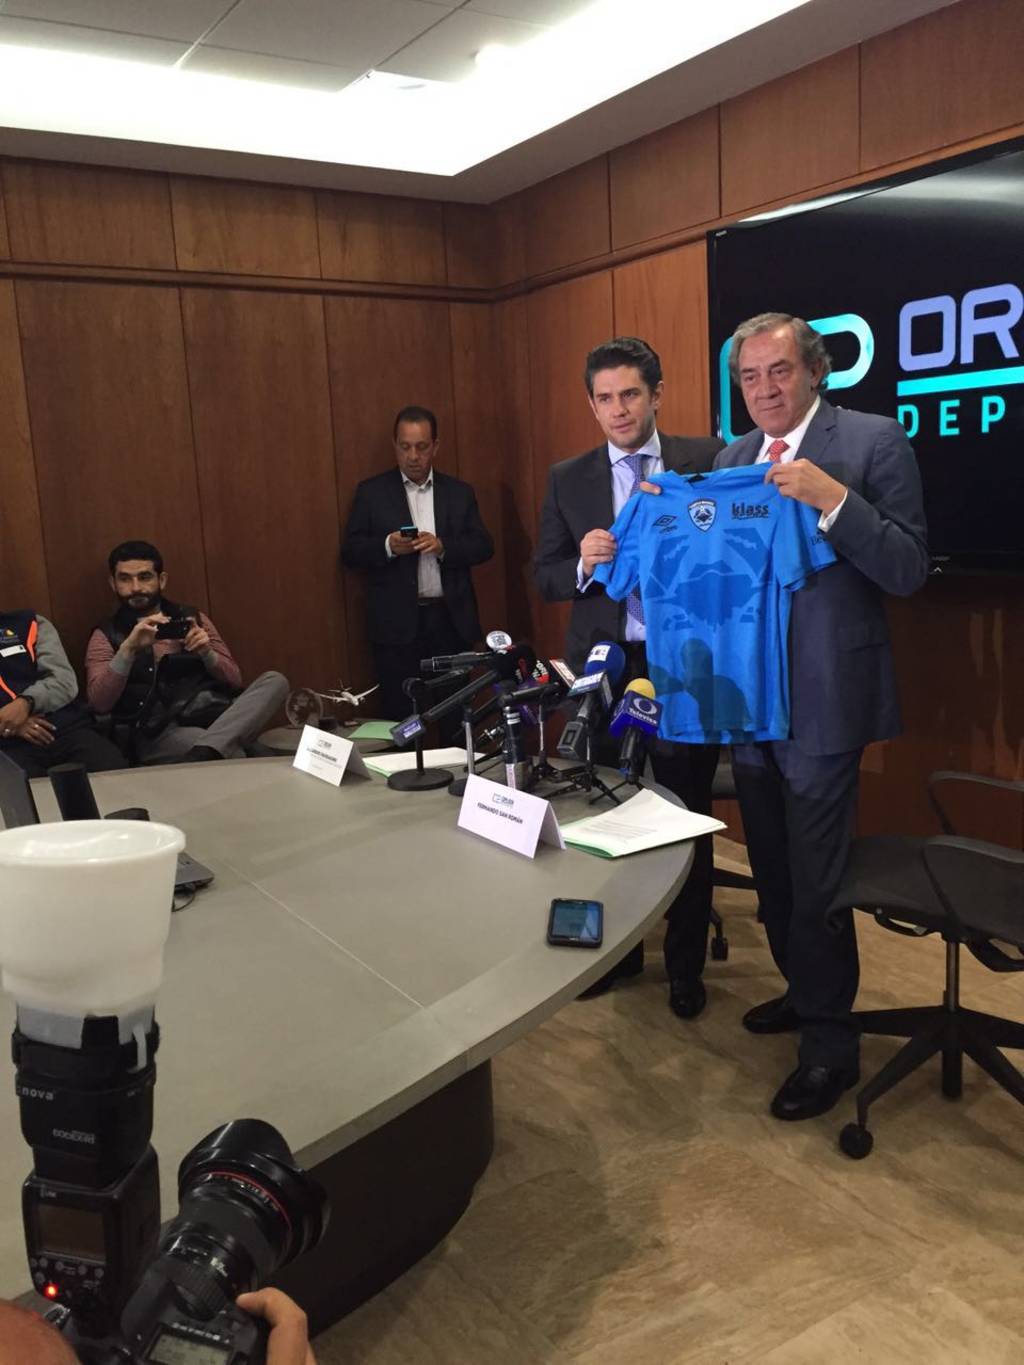 Teniendo como escenario las oficinas corporativas de Orlegi Deportes en la Ciudad de México, se anunció que Orlegi Deportes se convierte en co-inversionista, junto con la Familia San Román, del Tampico Madero Futbol Club.